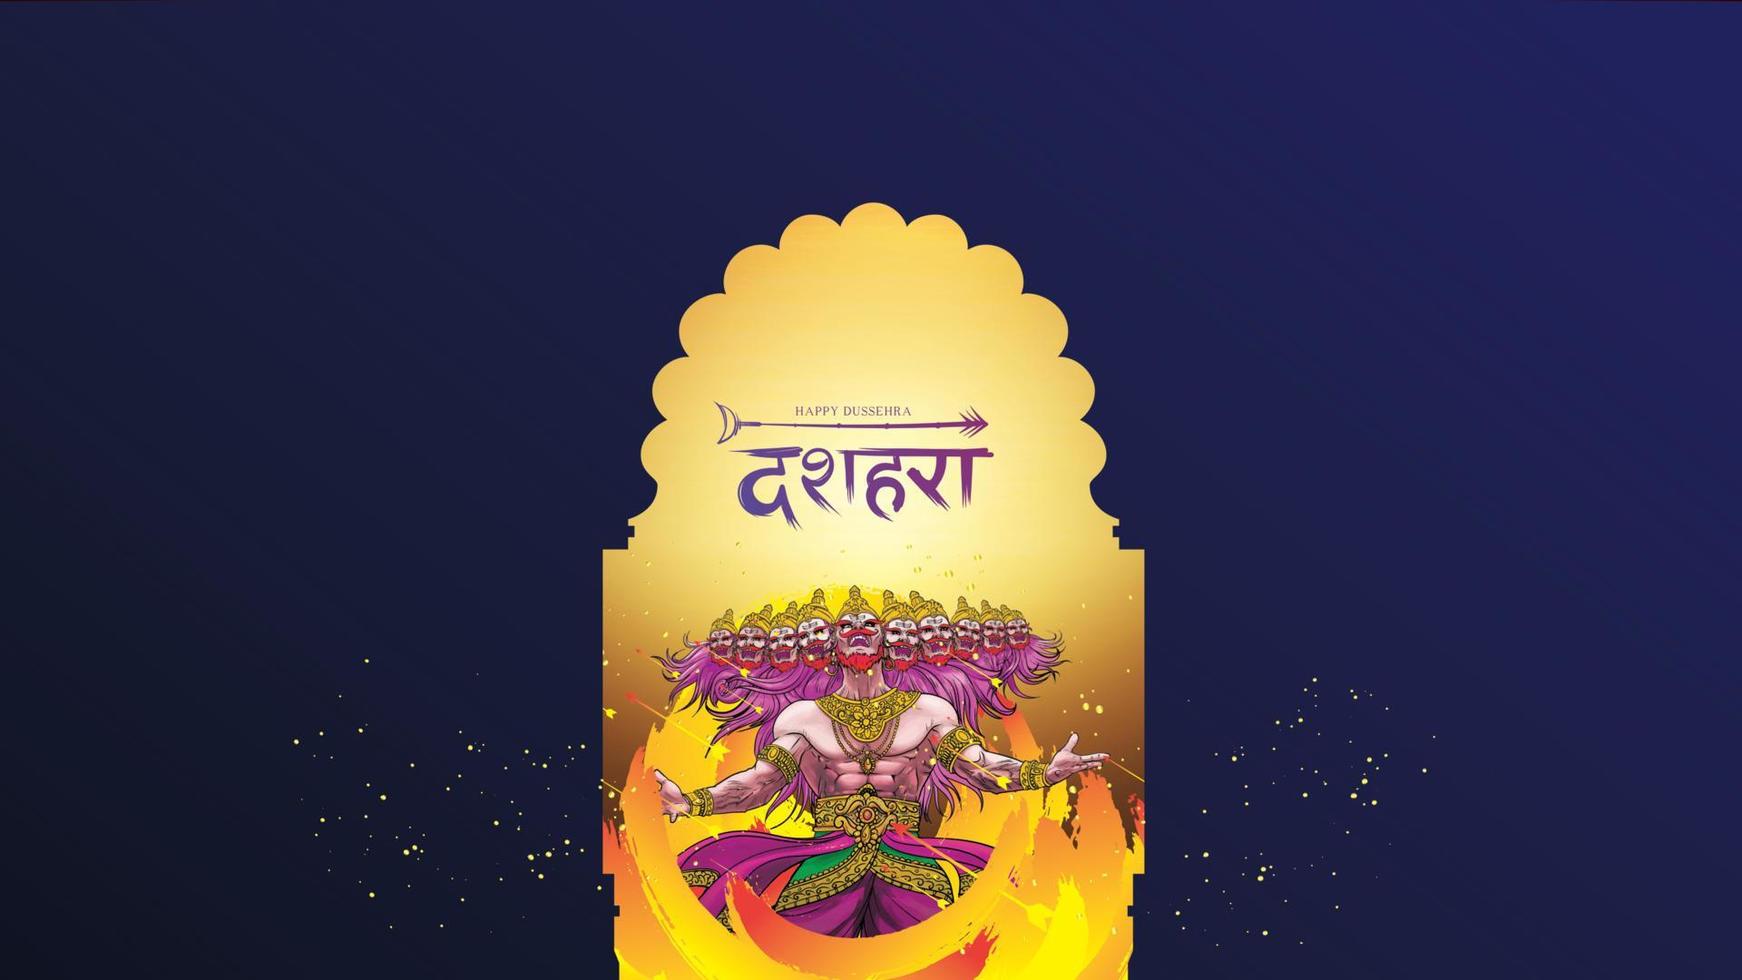 ilustración vectorial creativa de lord rama matando a ravana en el feliz festival de carteles dussehra navratri de la india. traducción dussehra vector